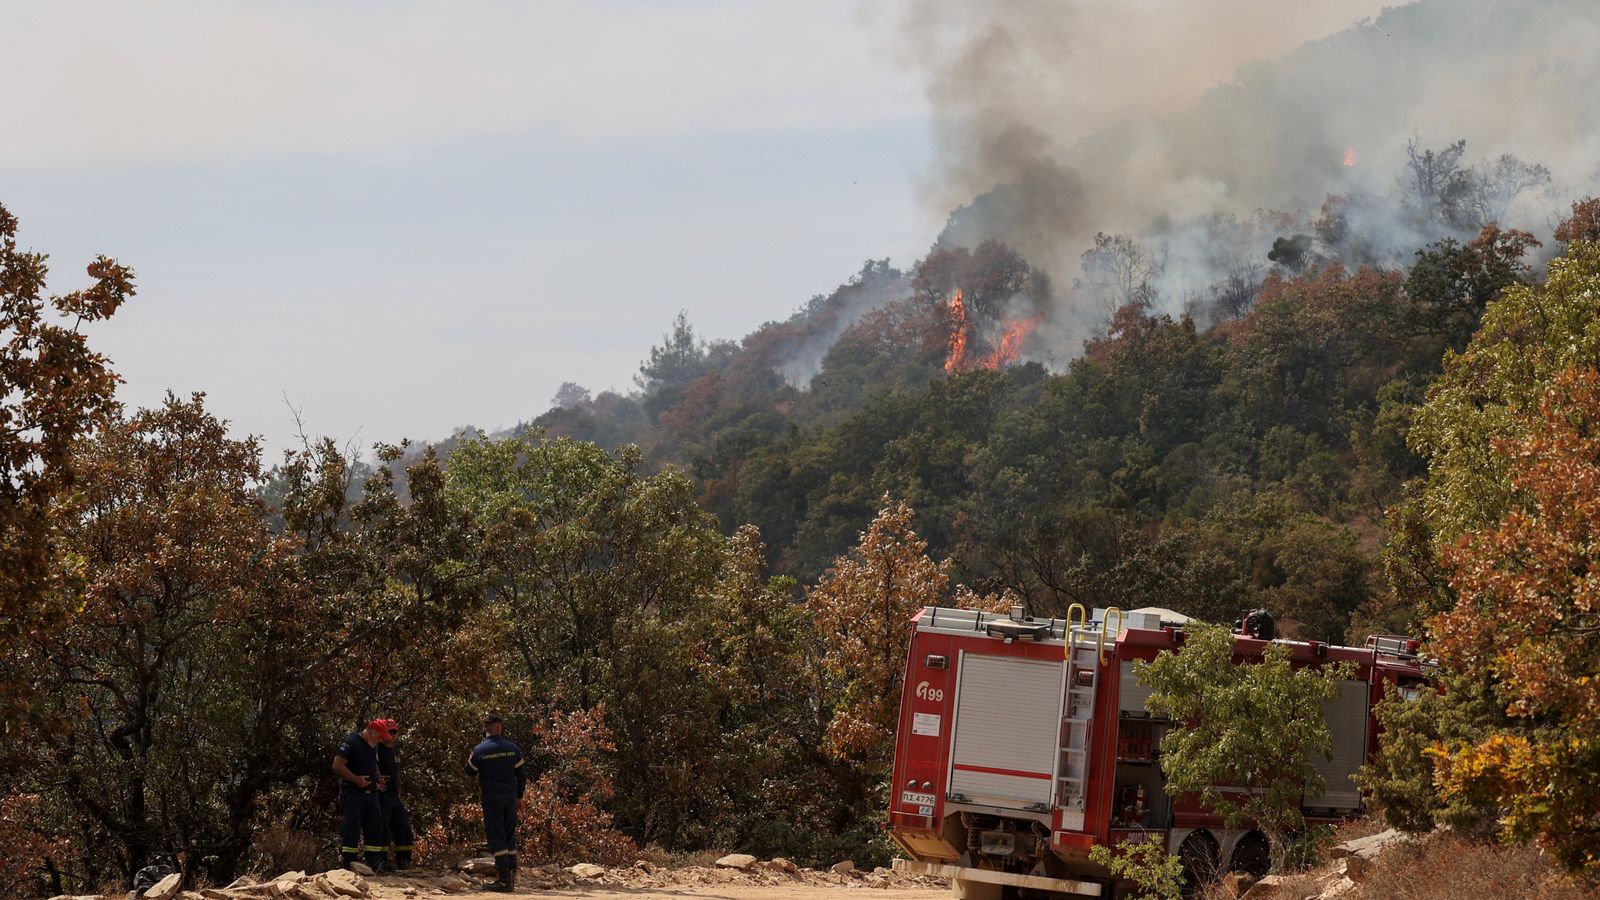 Lính cứu hỏa ở Hy Lạp chiến đấu với đám cháy rừng lớn nhất từng được ghi nhận ở EU - Ảnh 1.